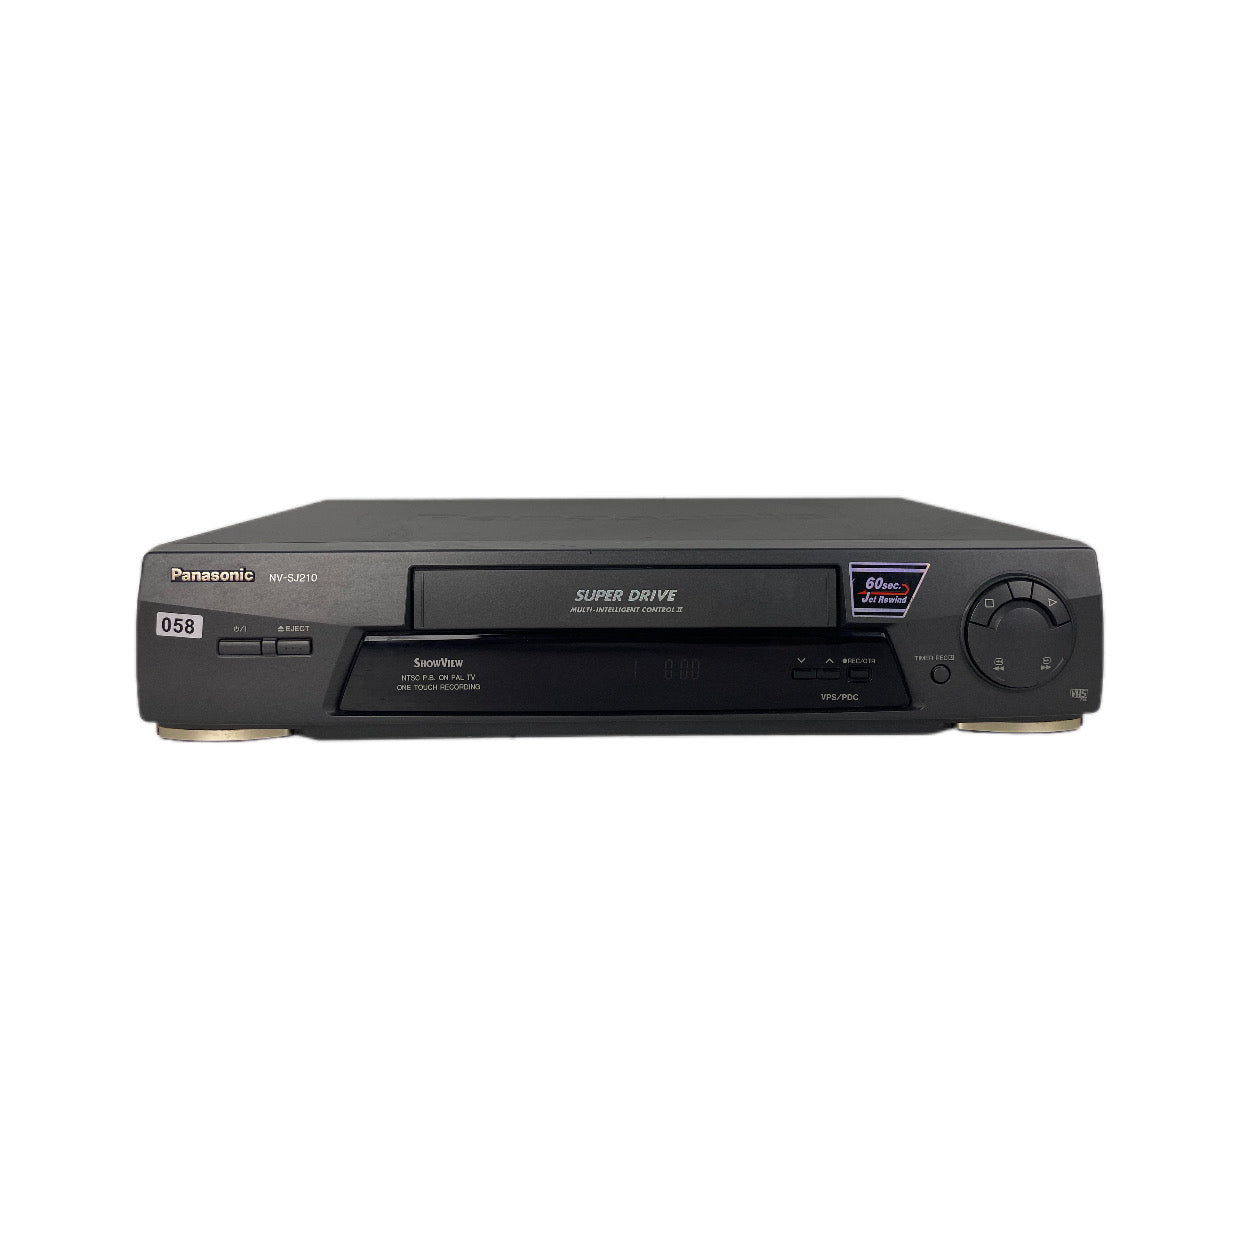 Panasonic NV-SJ210 Video Cassette Recorder | Super Drive